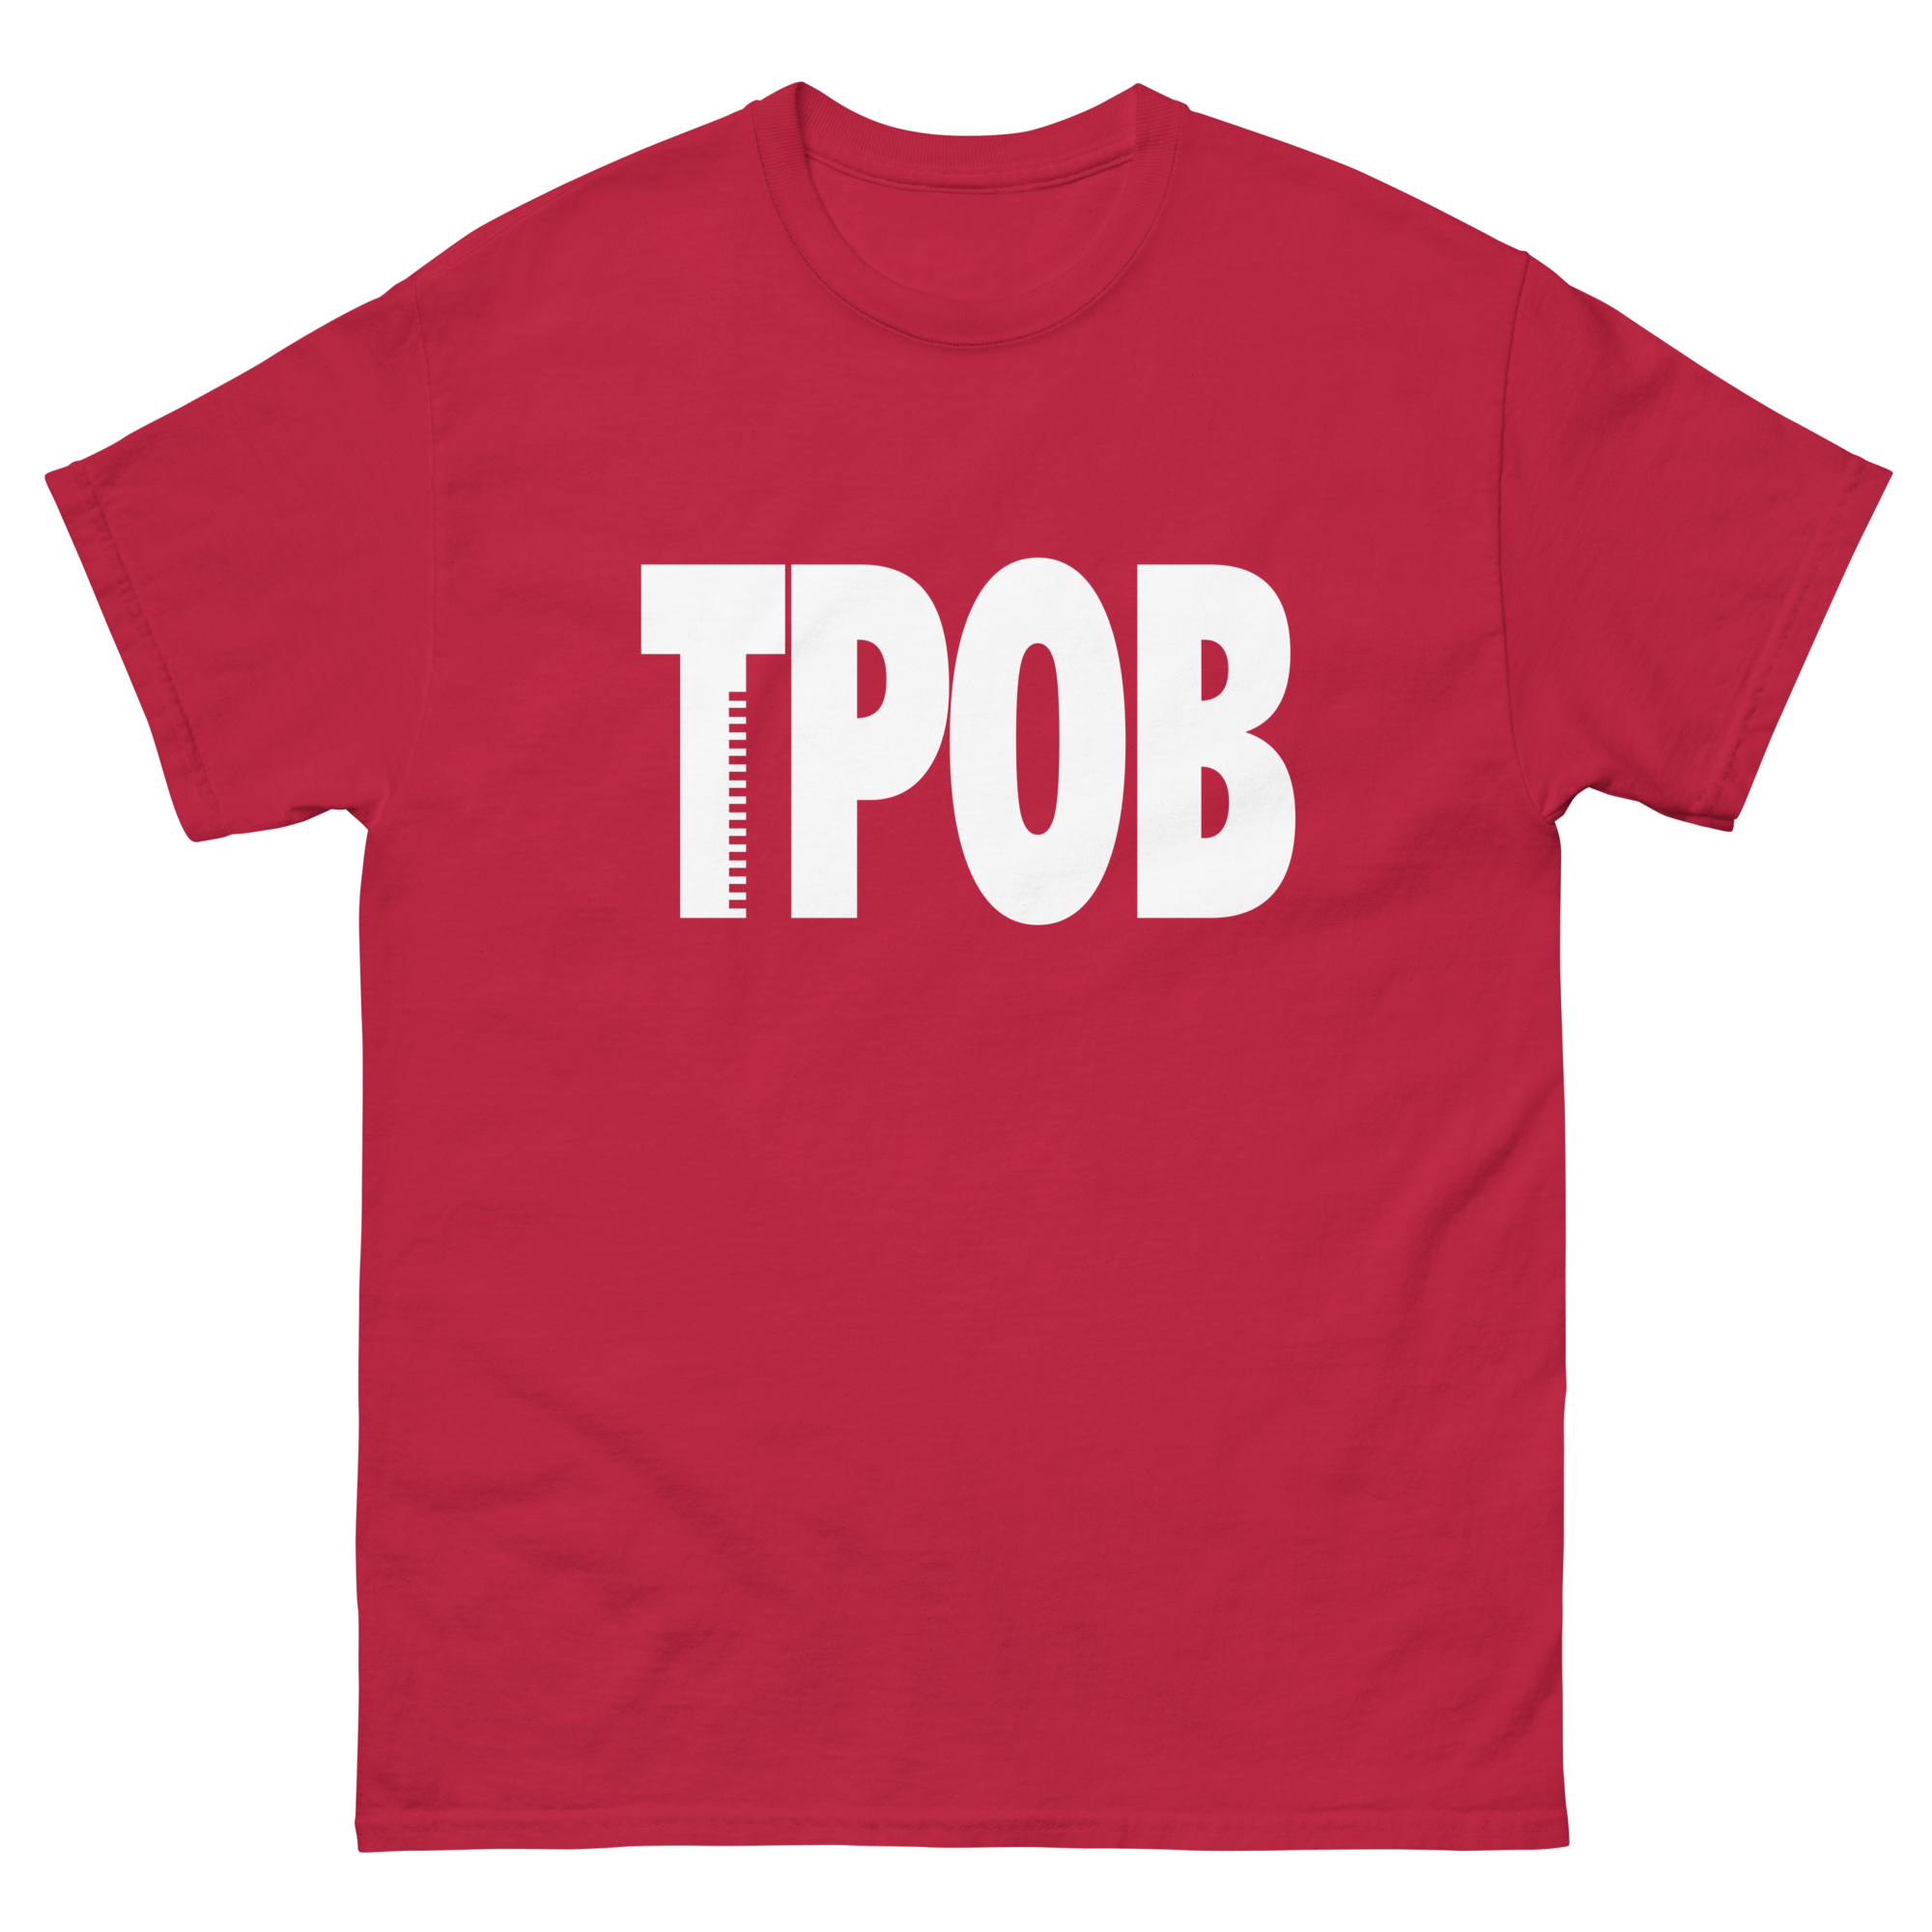 TPOB white logo tee